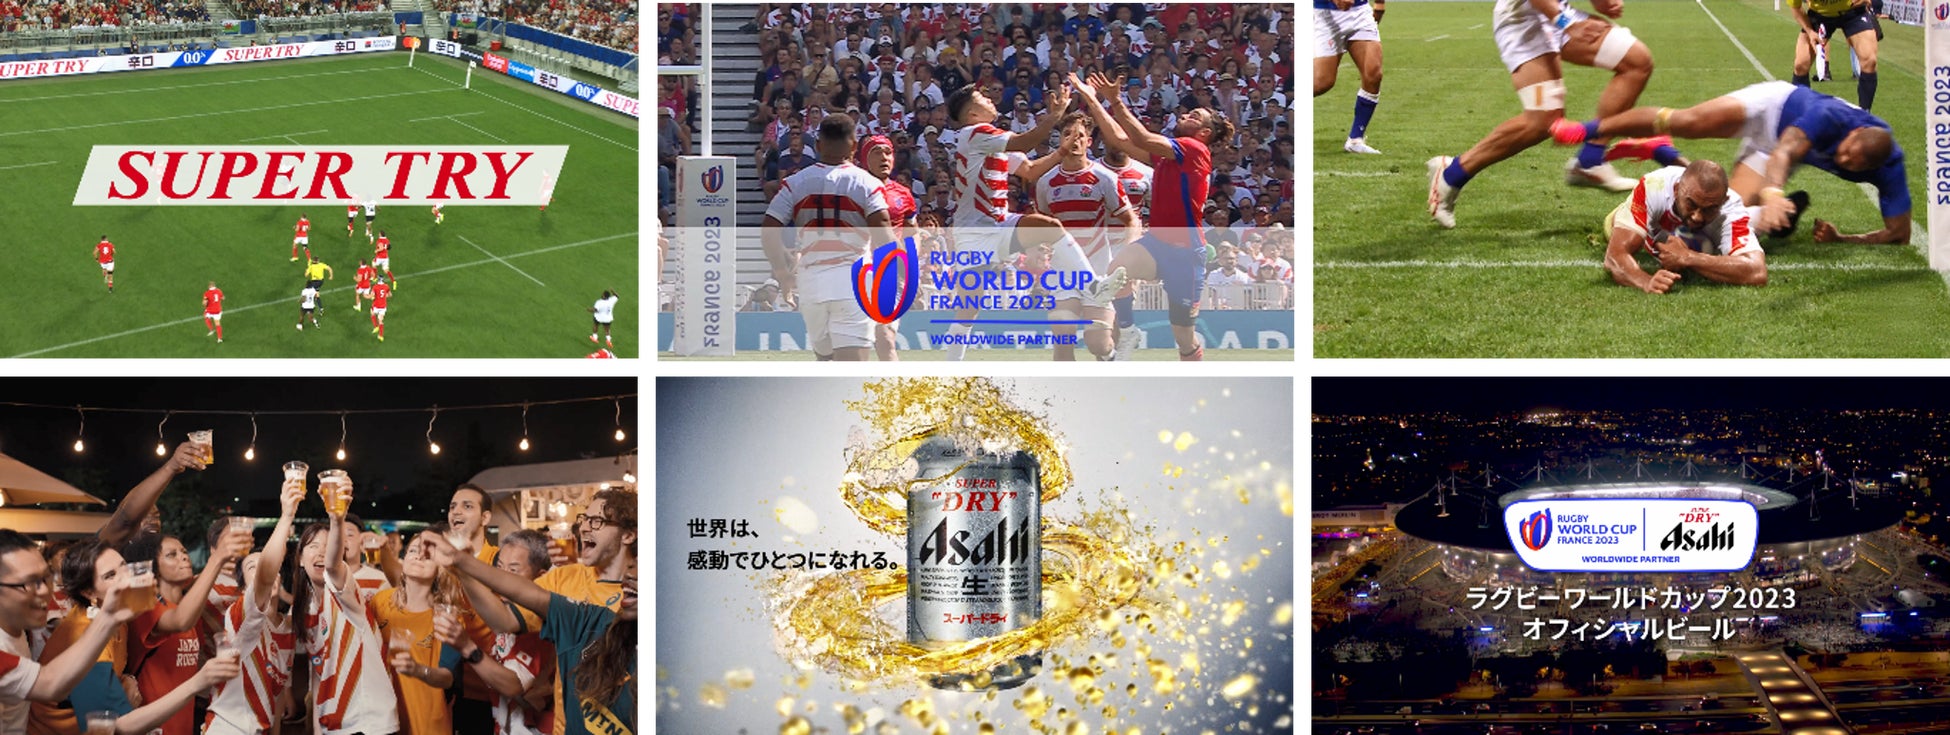 オフィシャルビール「スーパードライ」新TVCM「ラグビーワールドカップ2023 SUPER TRY」篇10月7日放映開始のサブ画像1